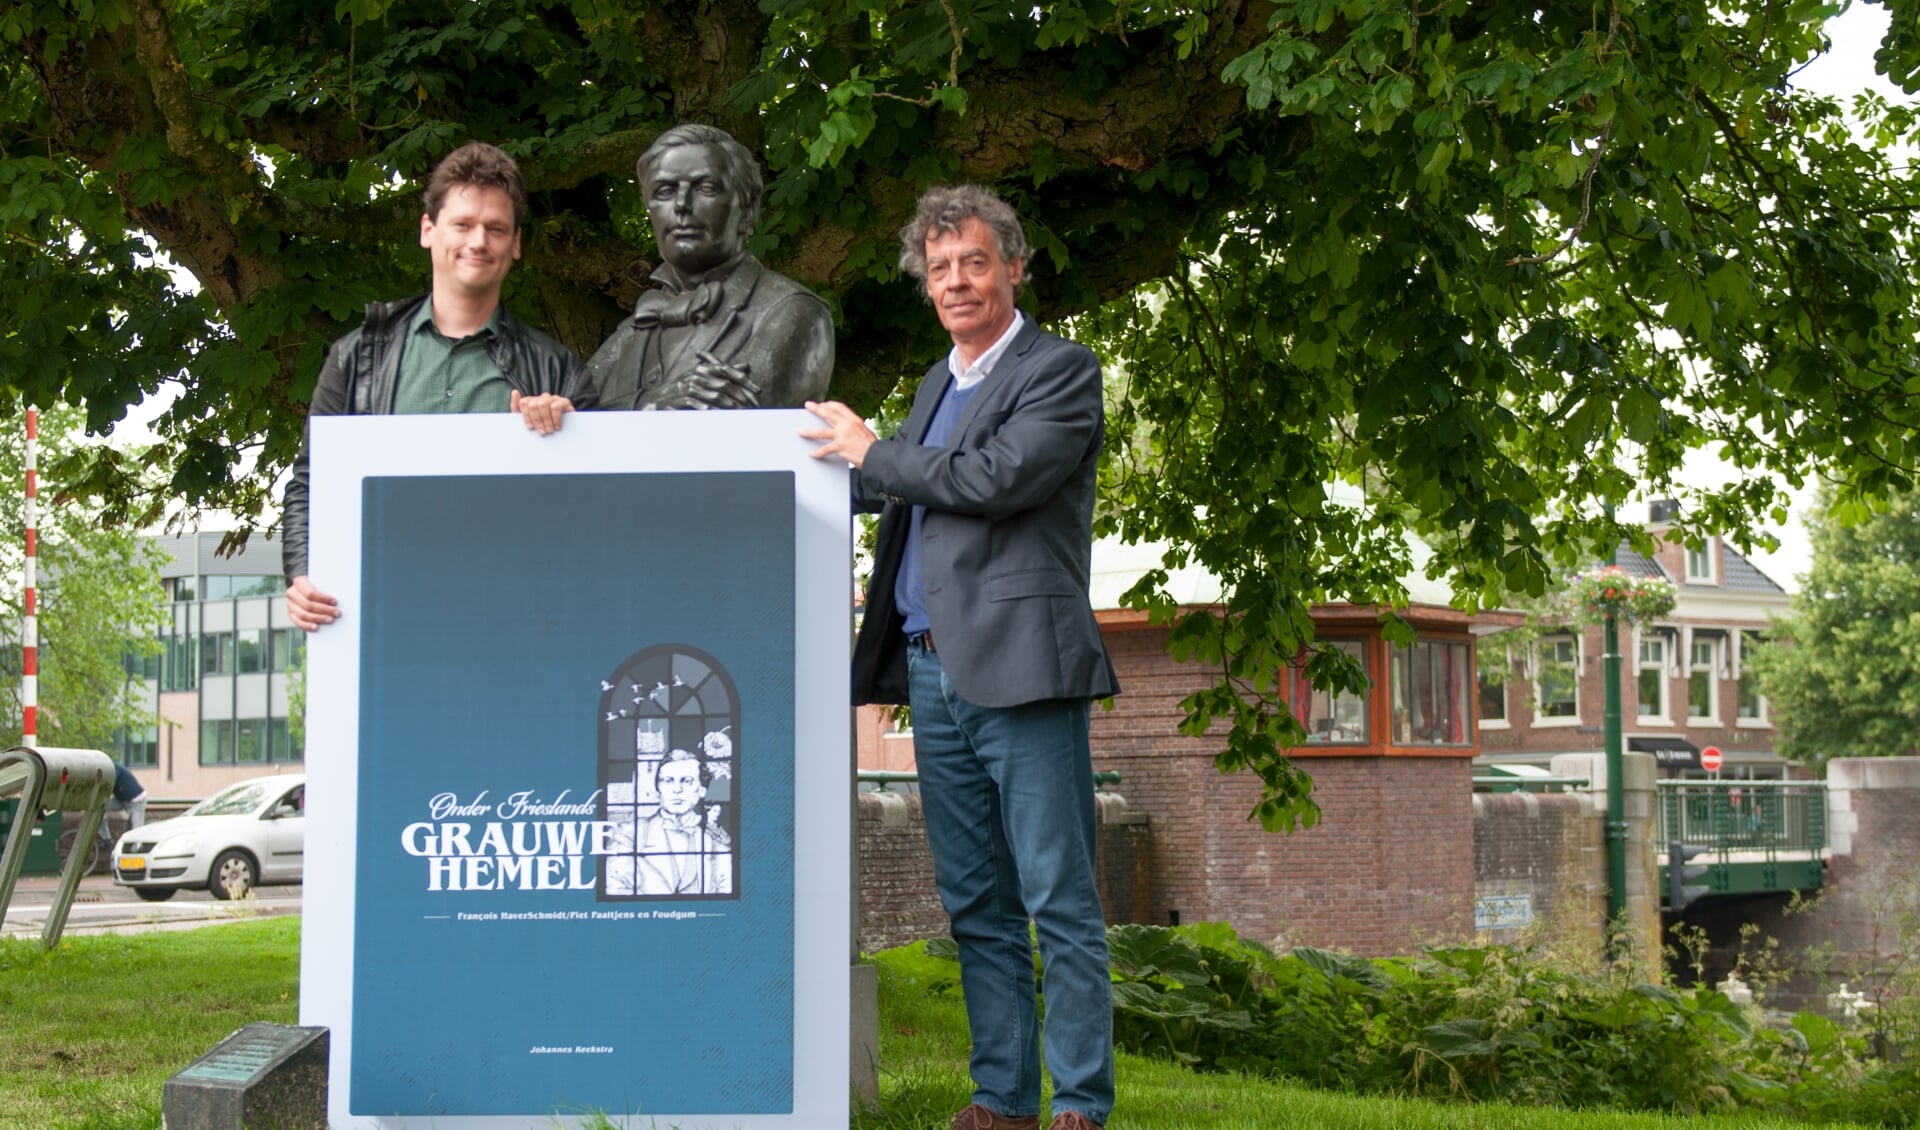 Schrijver Johannes Keekstra (links) onthult samen met uitgever Louw Dijkstra het boekomslag bij de buste van François HaverSchmidt in geboortestad Leeuwarden. 